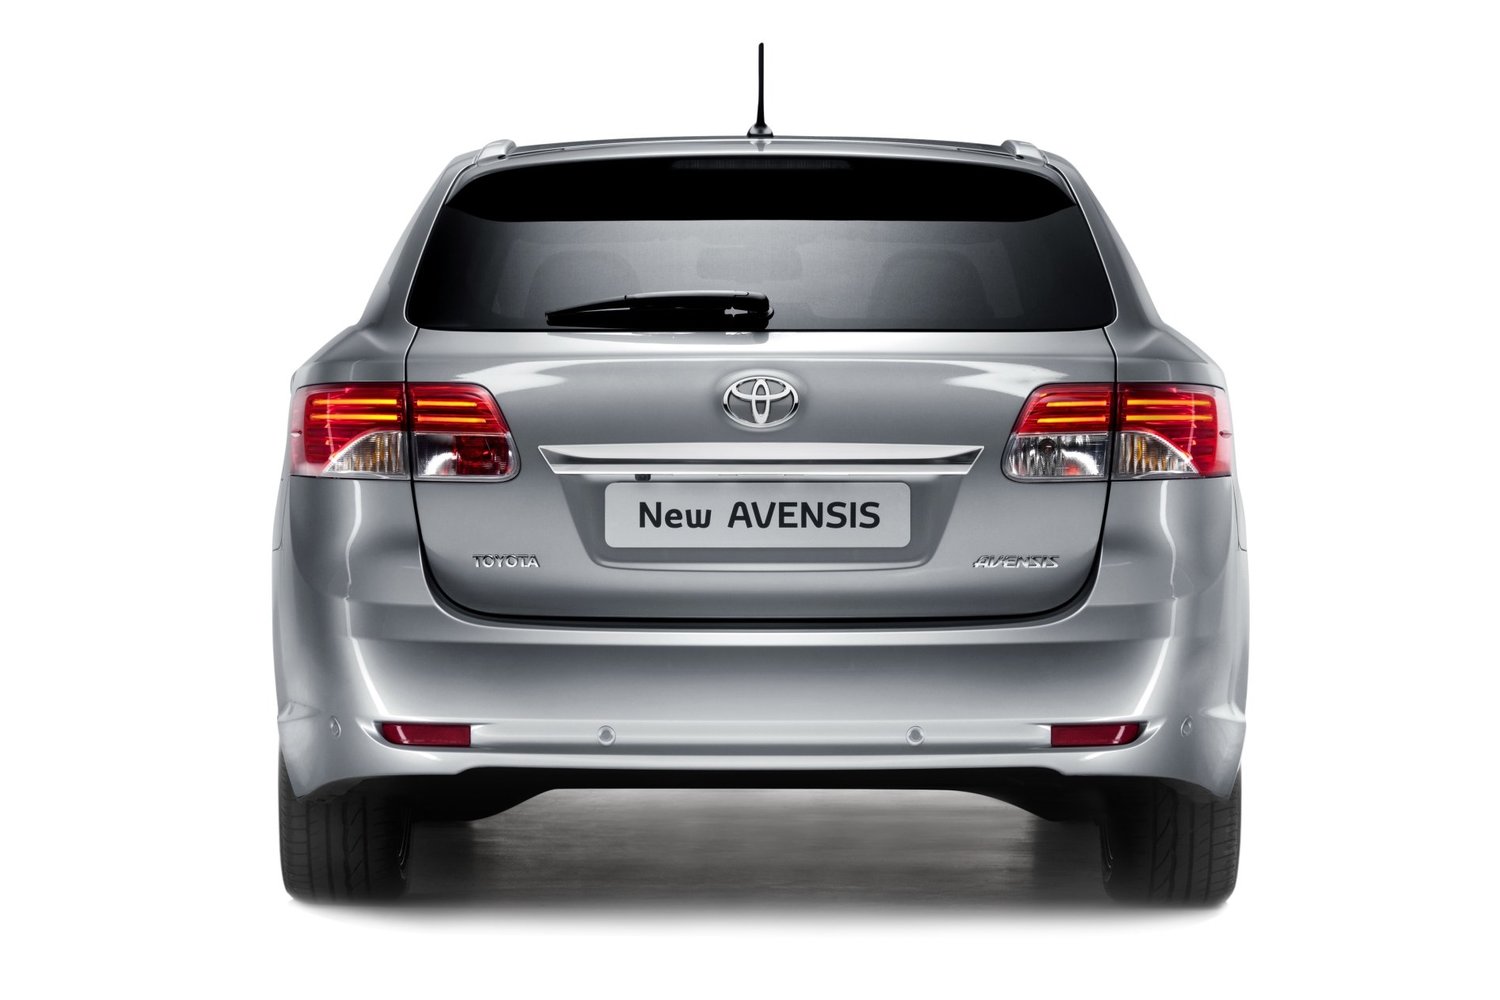 универсал Toyota Avensis 2011 - 2015г выпуска модификация 1.6 MT (132 л.с.)